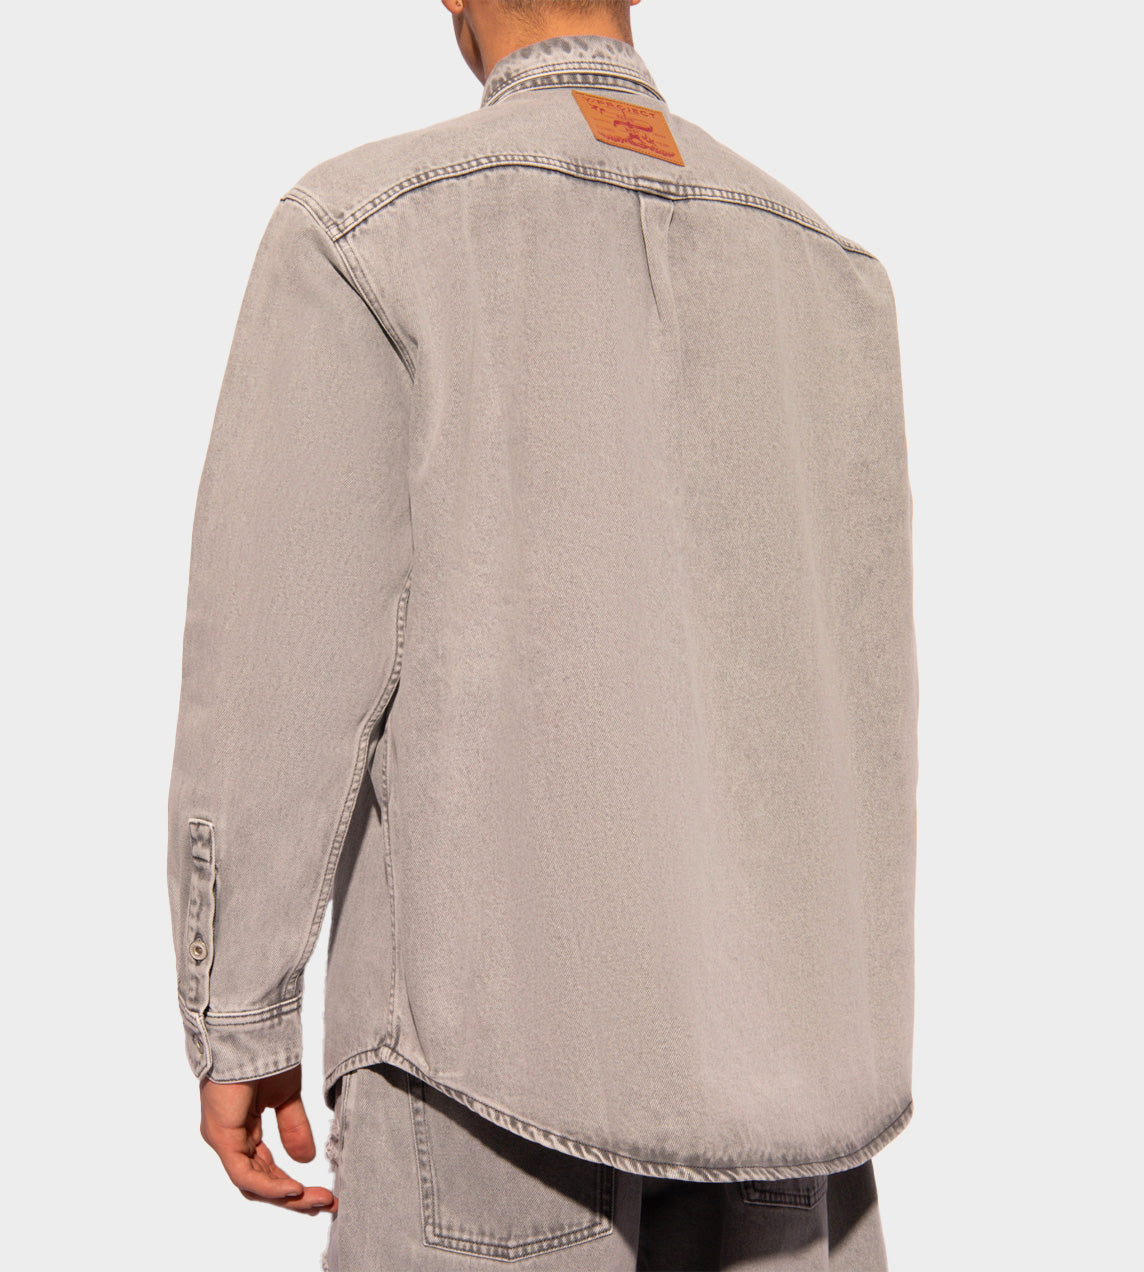 Y/Project - Paris' Best Patch Shirt Grey